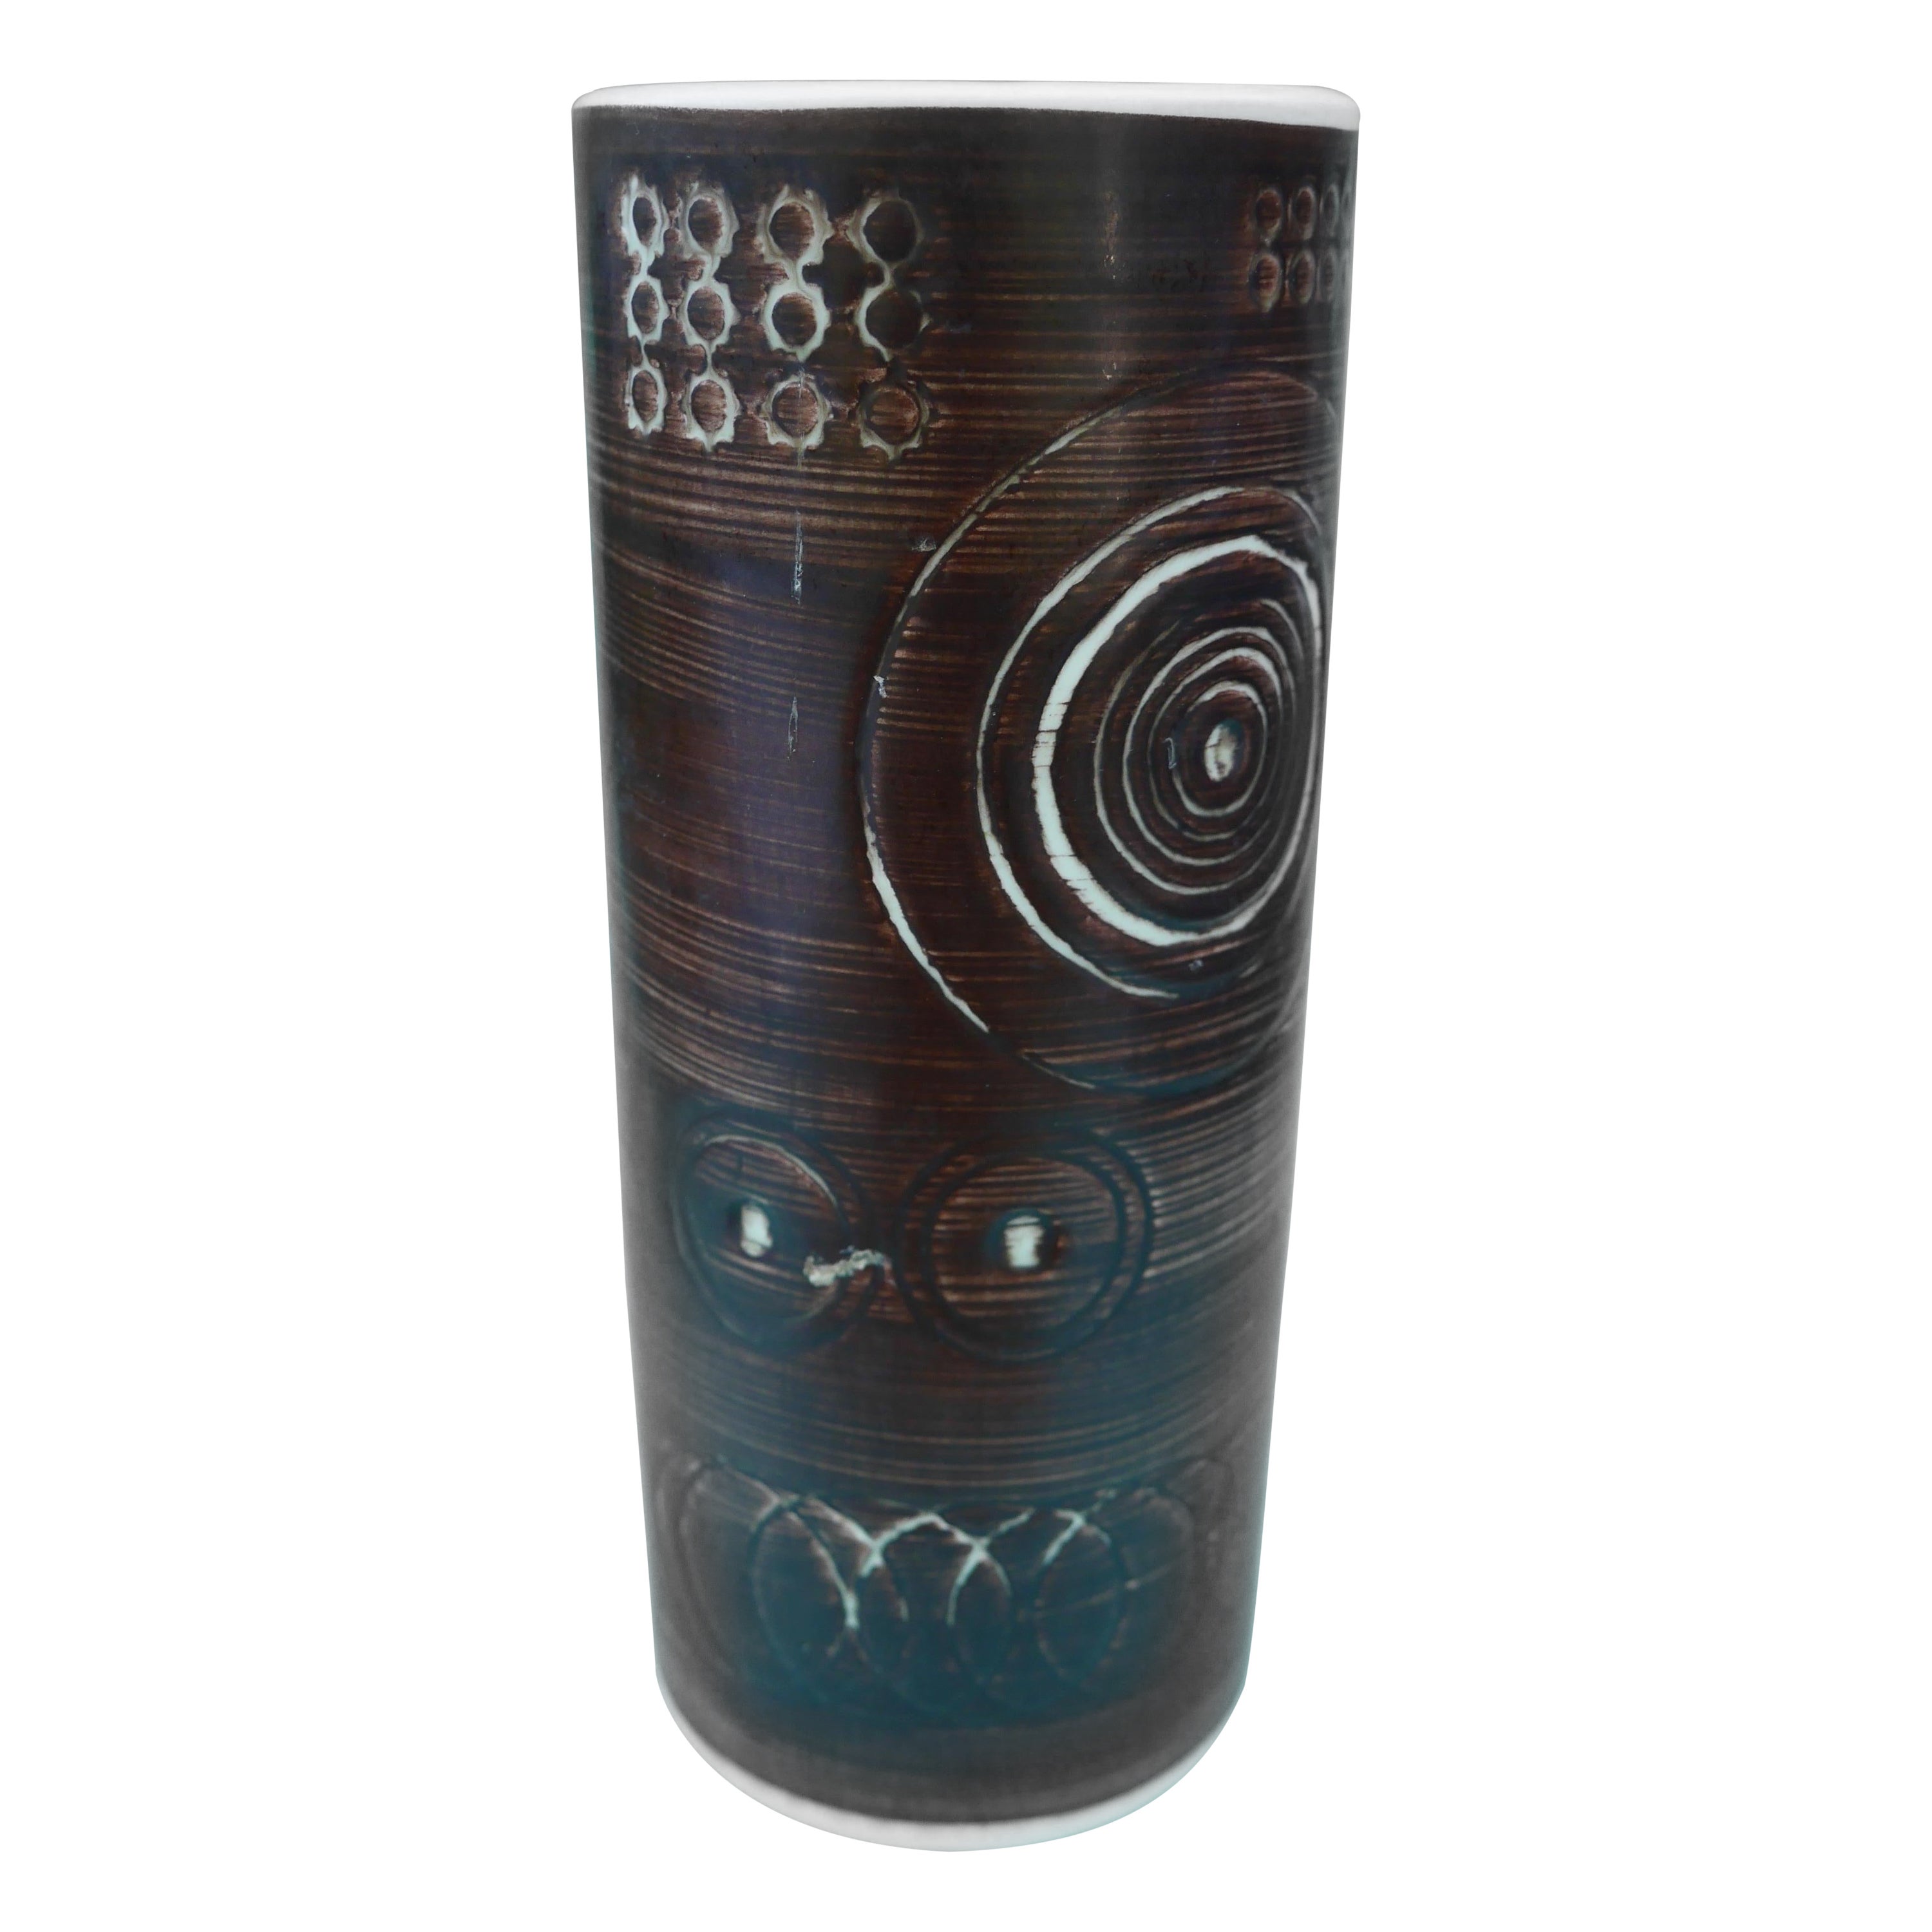 "Vase "Sarek", hergestellt von Olle Alberius für Rörstrand, Schweden